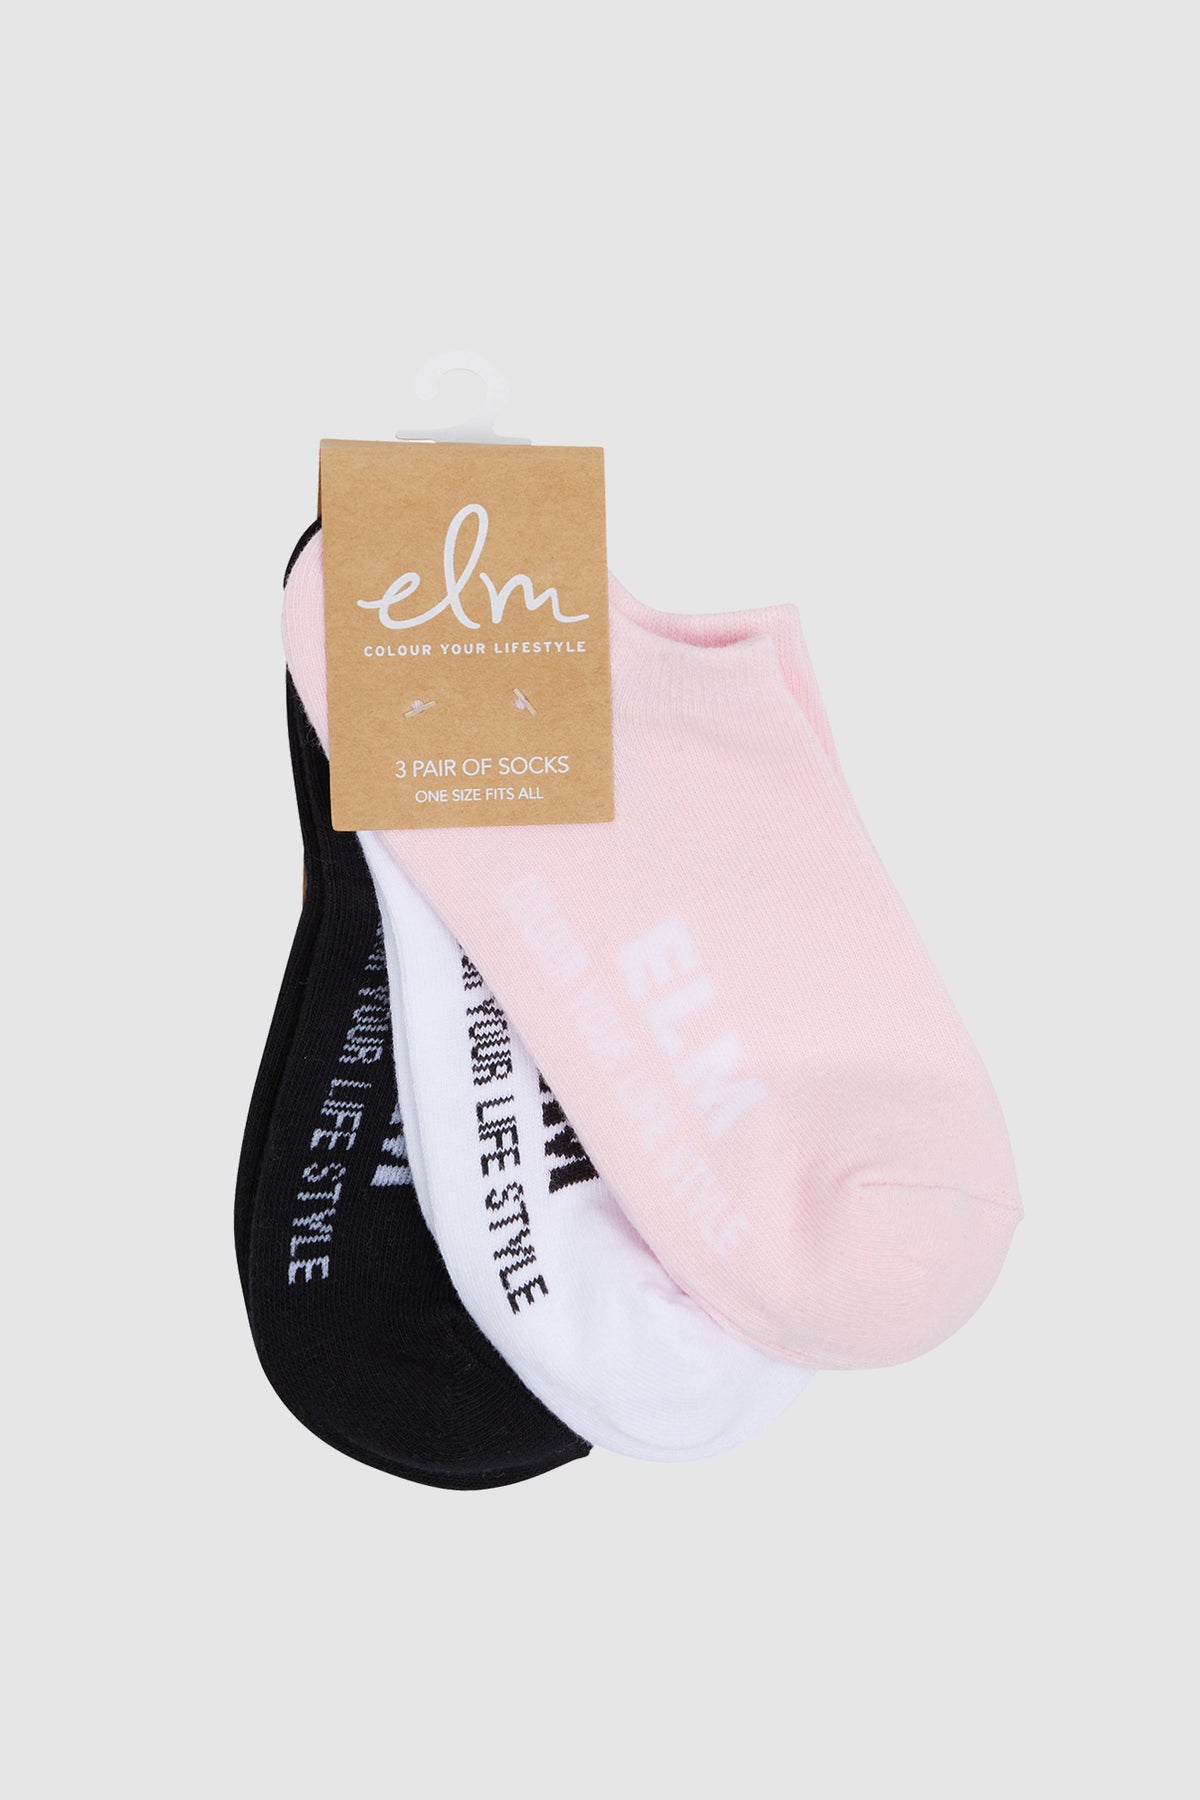 Elm Ankle Sock 3 Pack